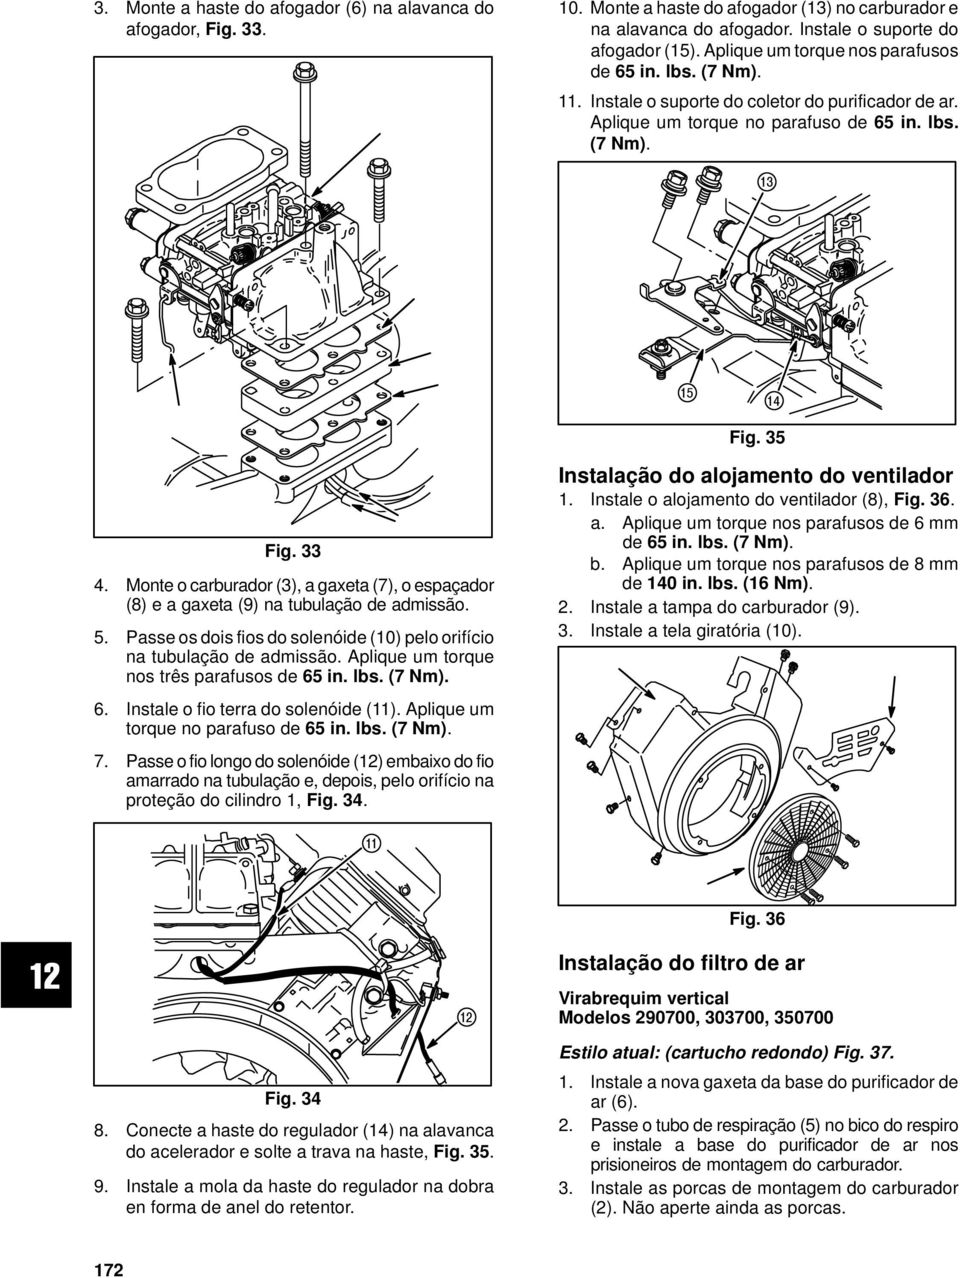 Monte o carburador (3), a gaxeta (7), o espaçador (8) e a gaxeta (9) na tubulação de admissão. 5. Passe os dois fios do solenóide (10) pelo orifício na tubulação de admissão.